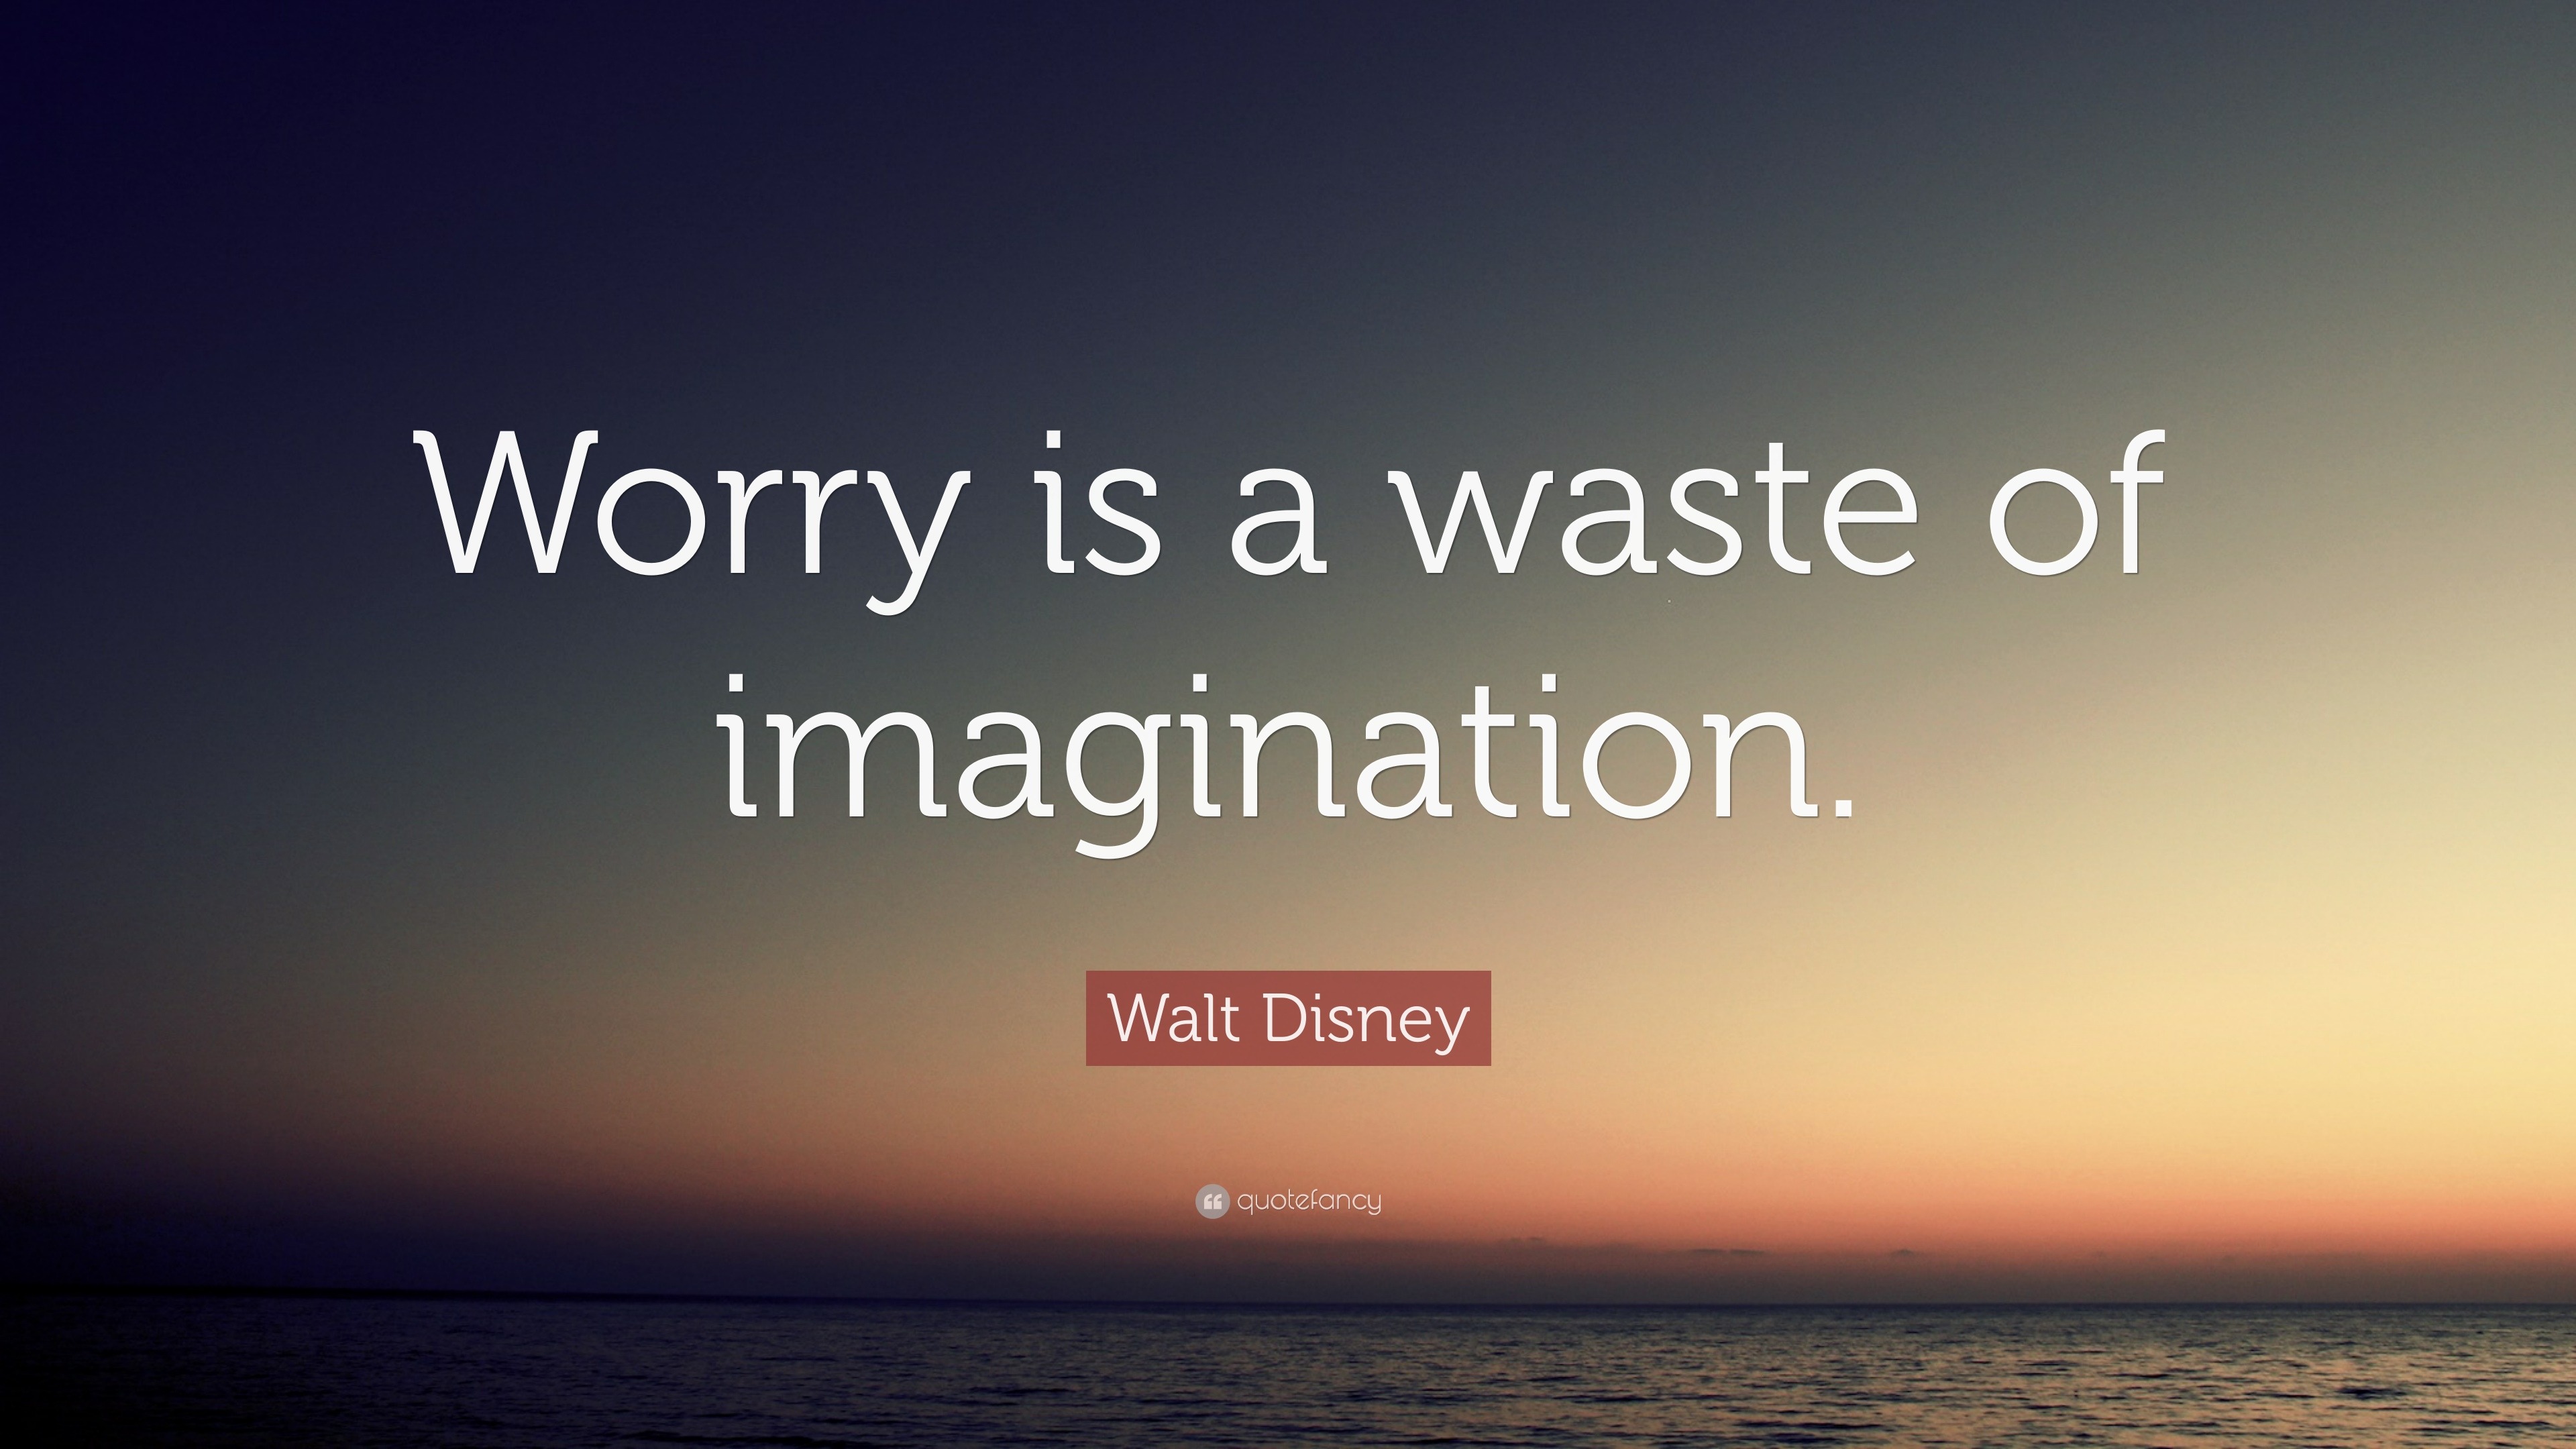 Walt Disney Quote: 